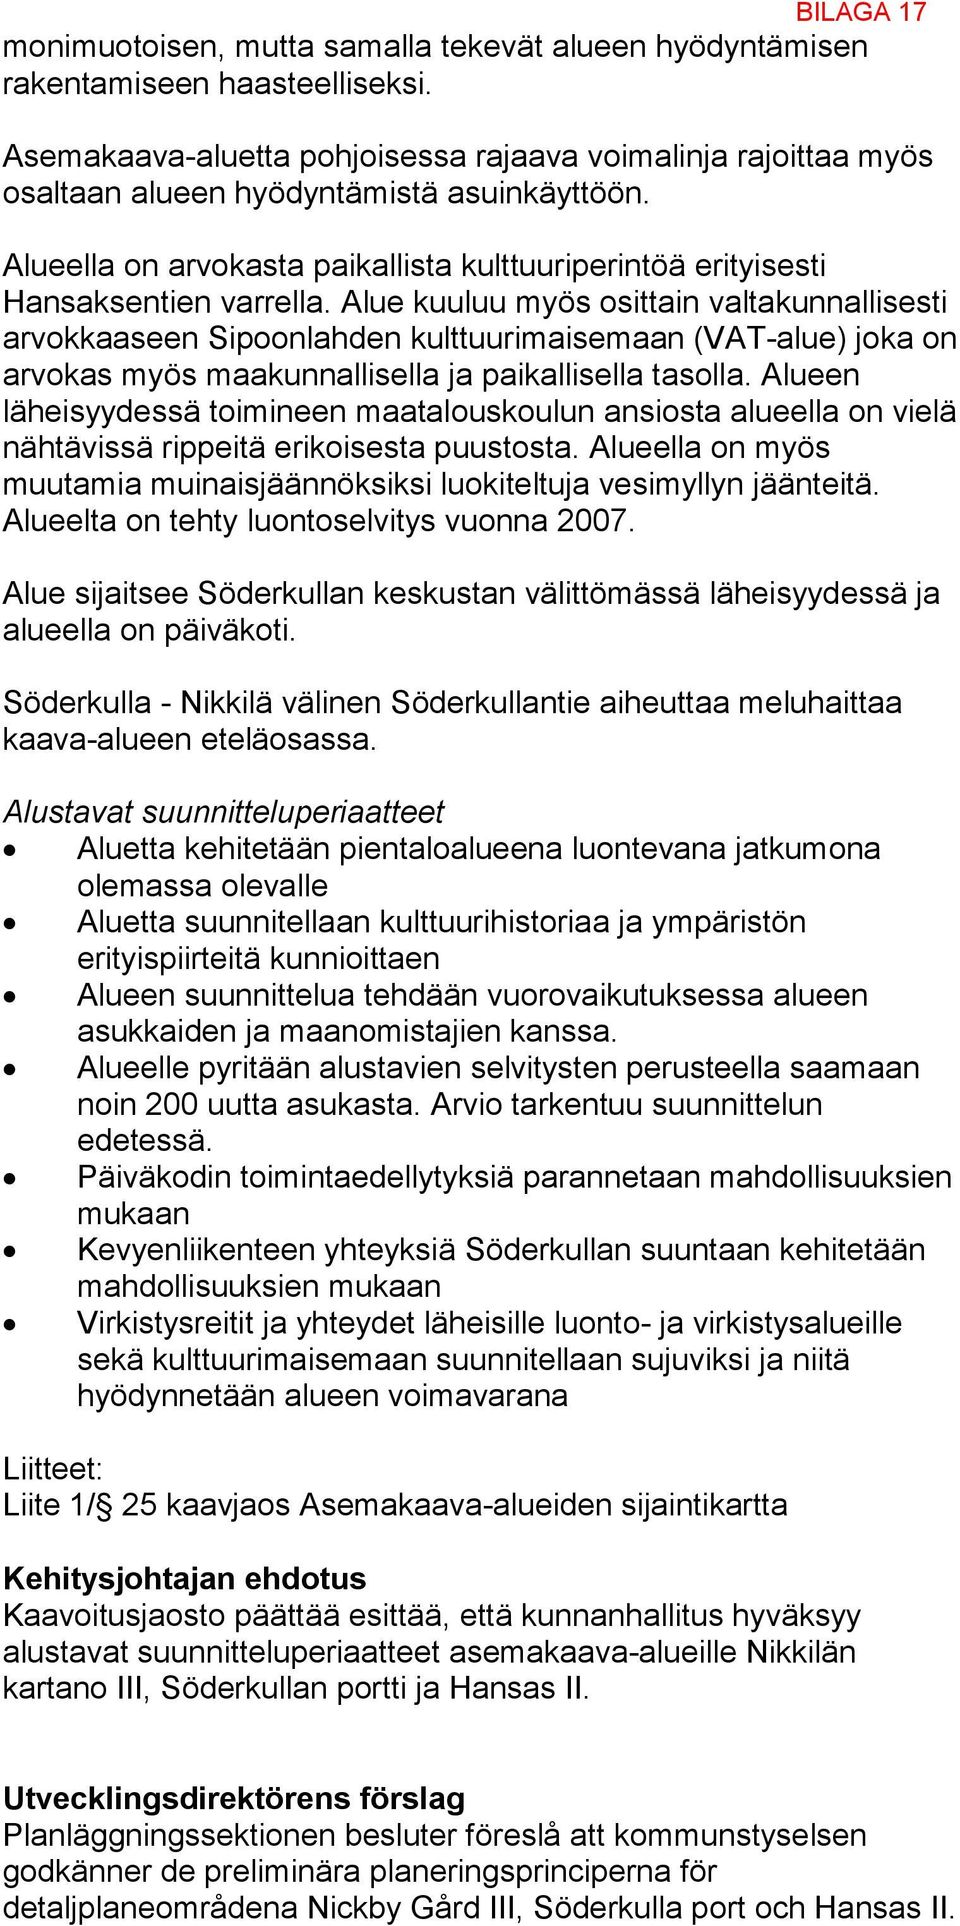 Alue kuuluu myös osittain valtakunnallisesti arvokkaaseen Sipoonlahden kulttuurimaisemaan (VAT-alue) joka on arvokas myös maakunnallisella ja paikallisella tasolla.